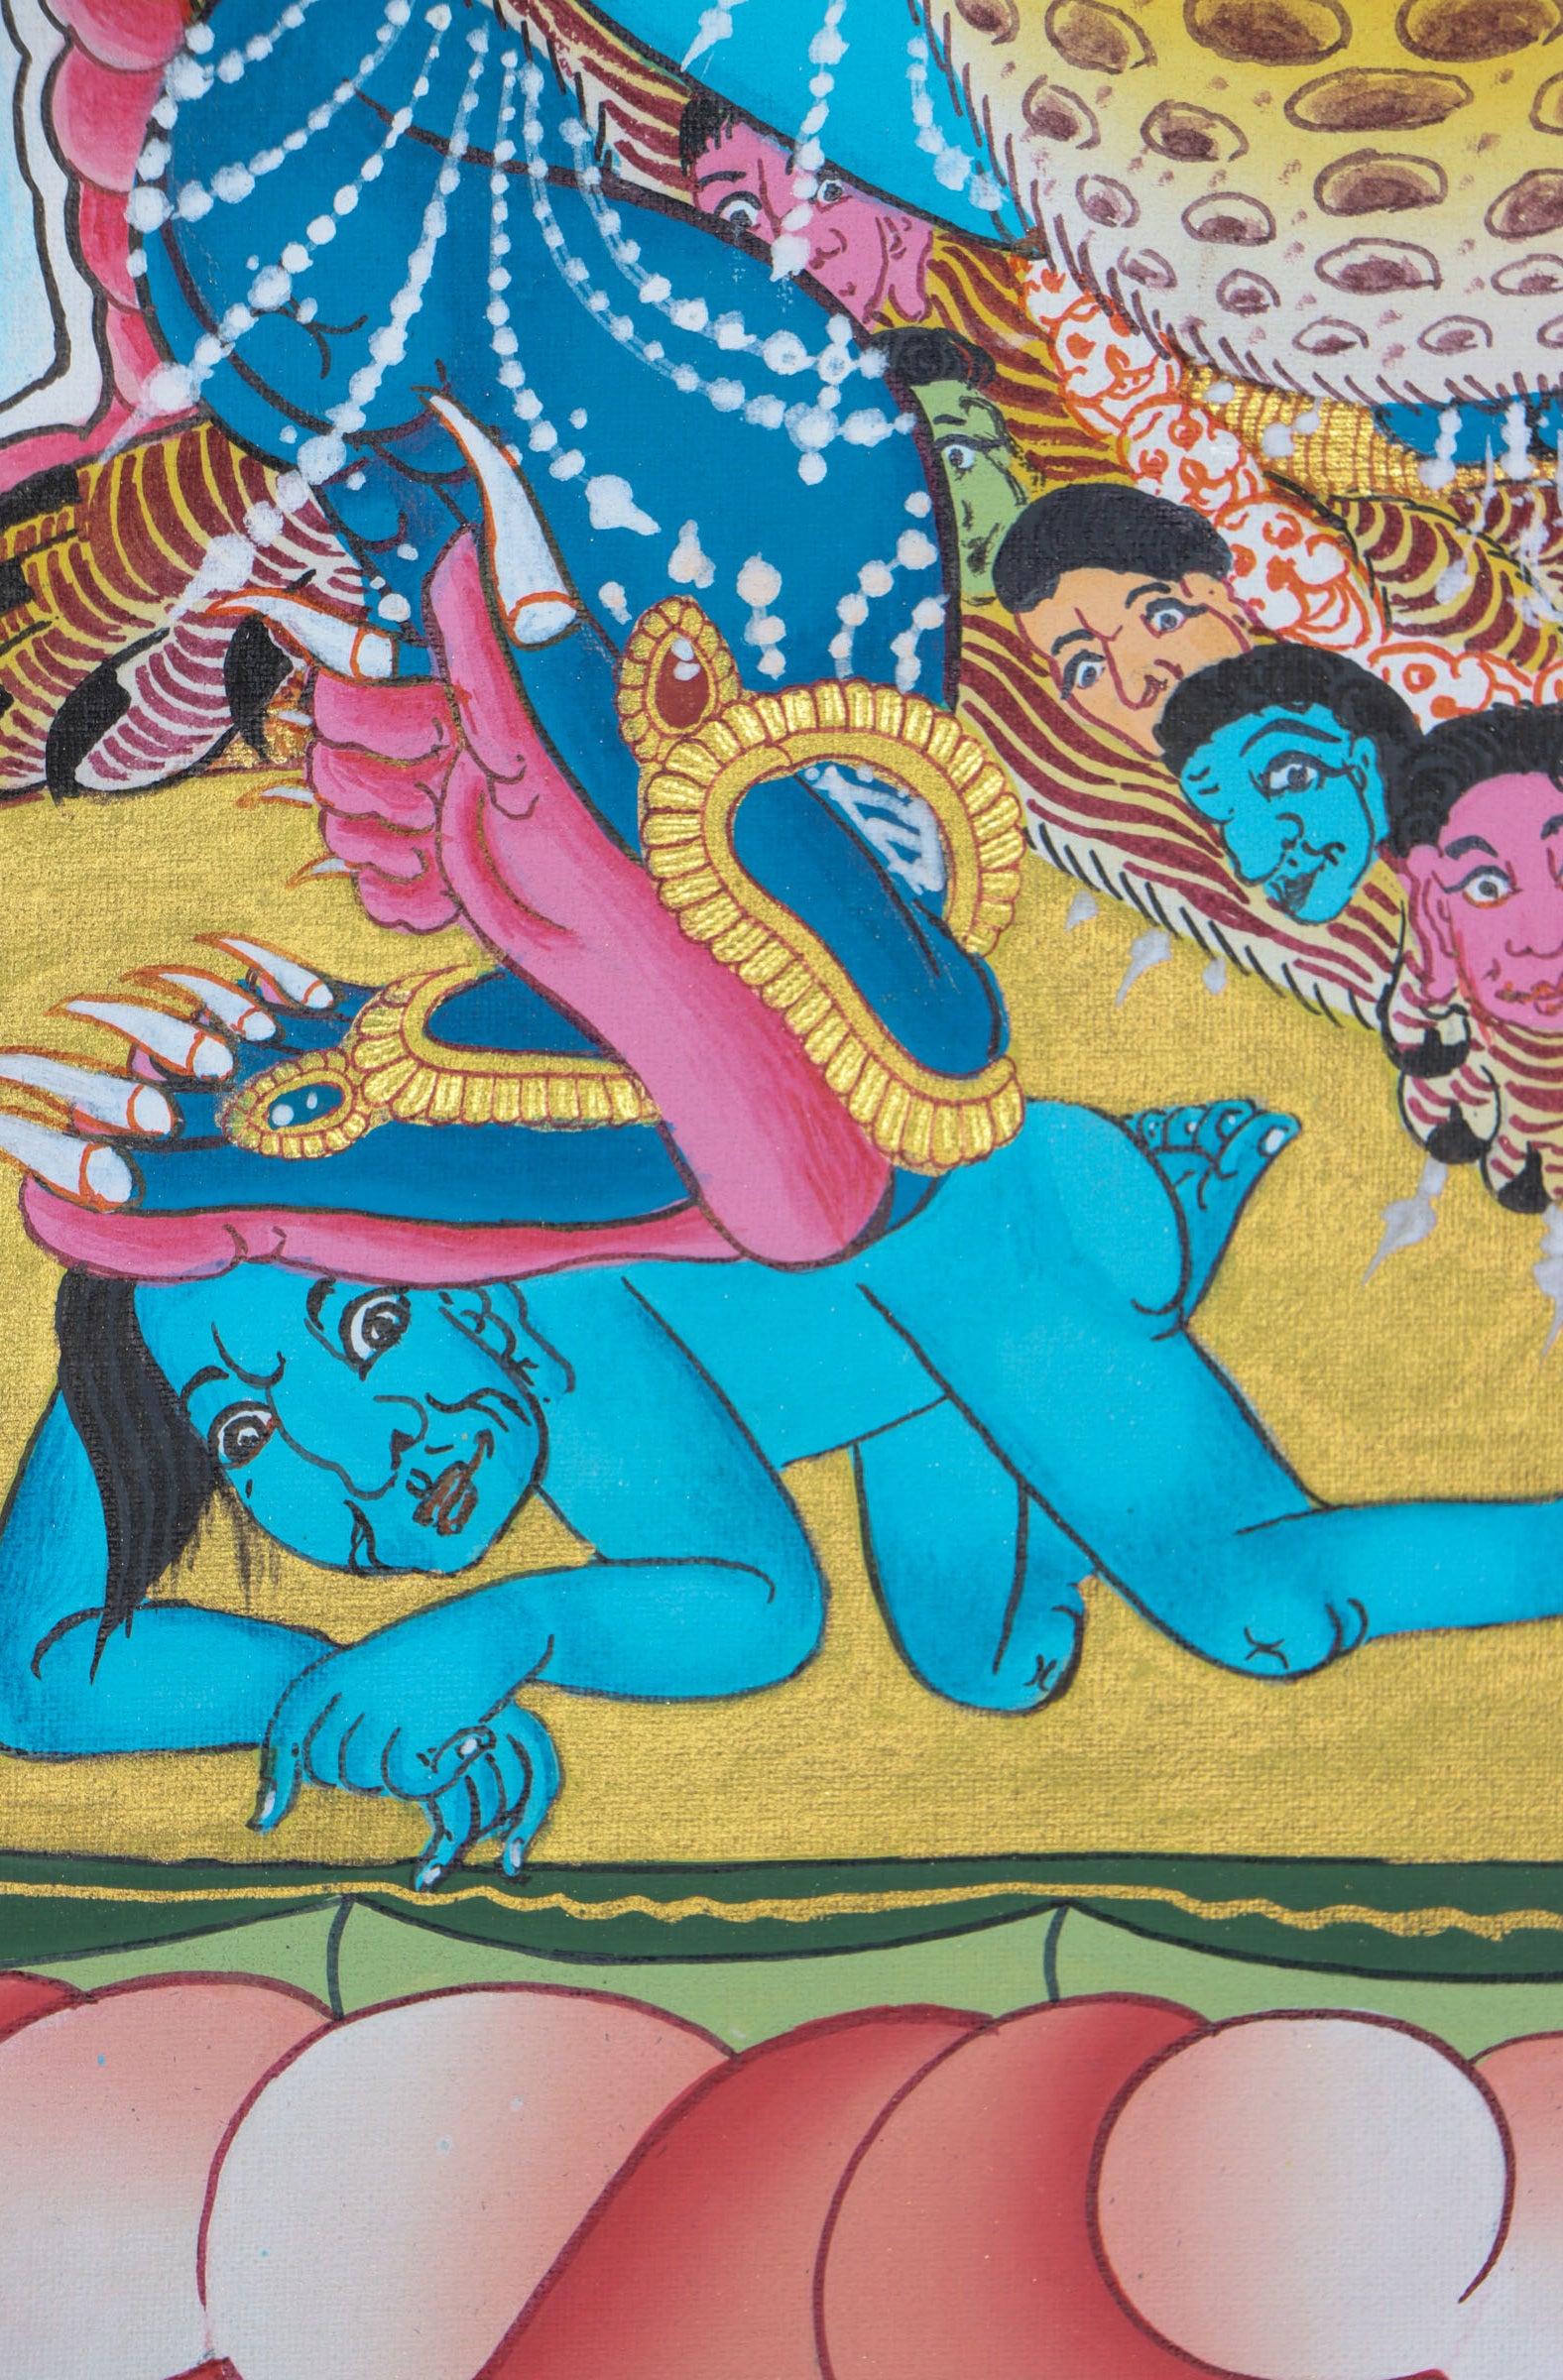 Vajrakilaya Thangka Painting for spiritual practices.